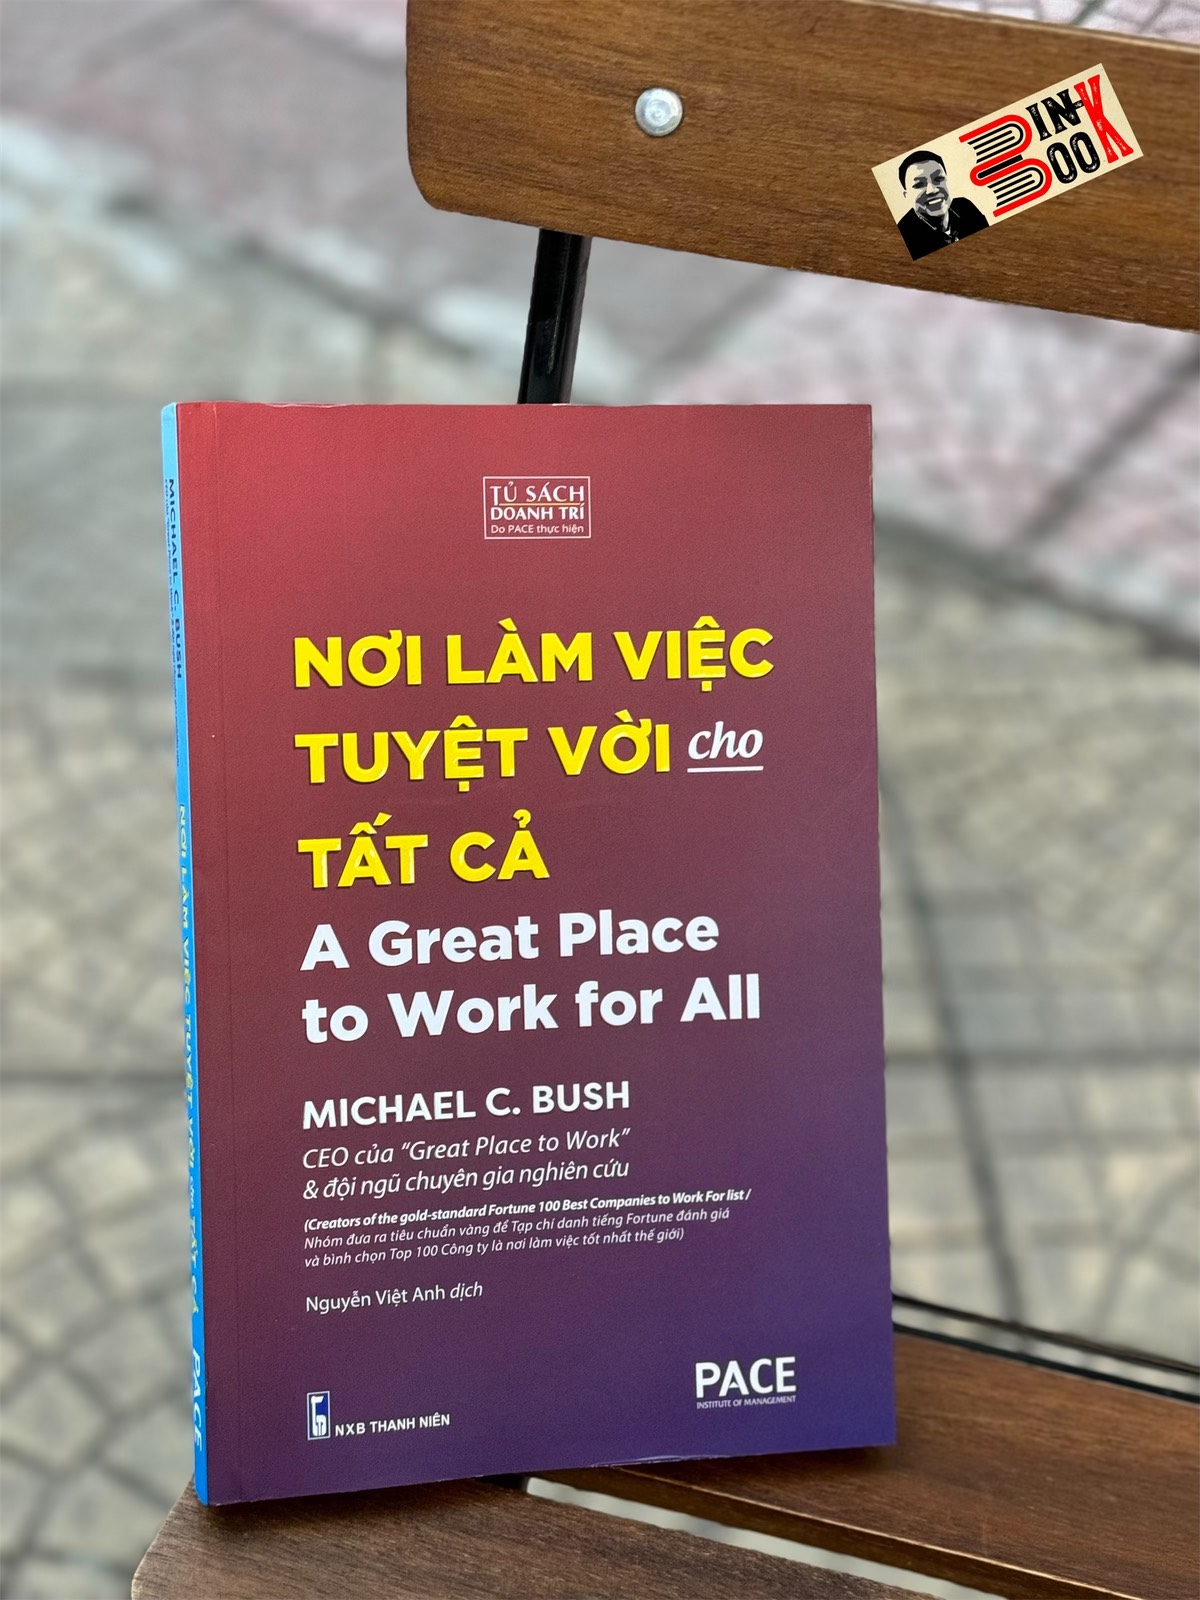 NƠI LÀM VIỆC TUYỆT VỜI CHO TẤT CẢ - Michael c. Bush - Nguyễn Việt Anh dịch - Pace Books - Nhà xuất bản Thanh Niên.